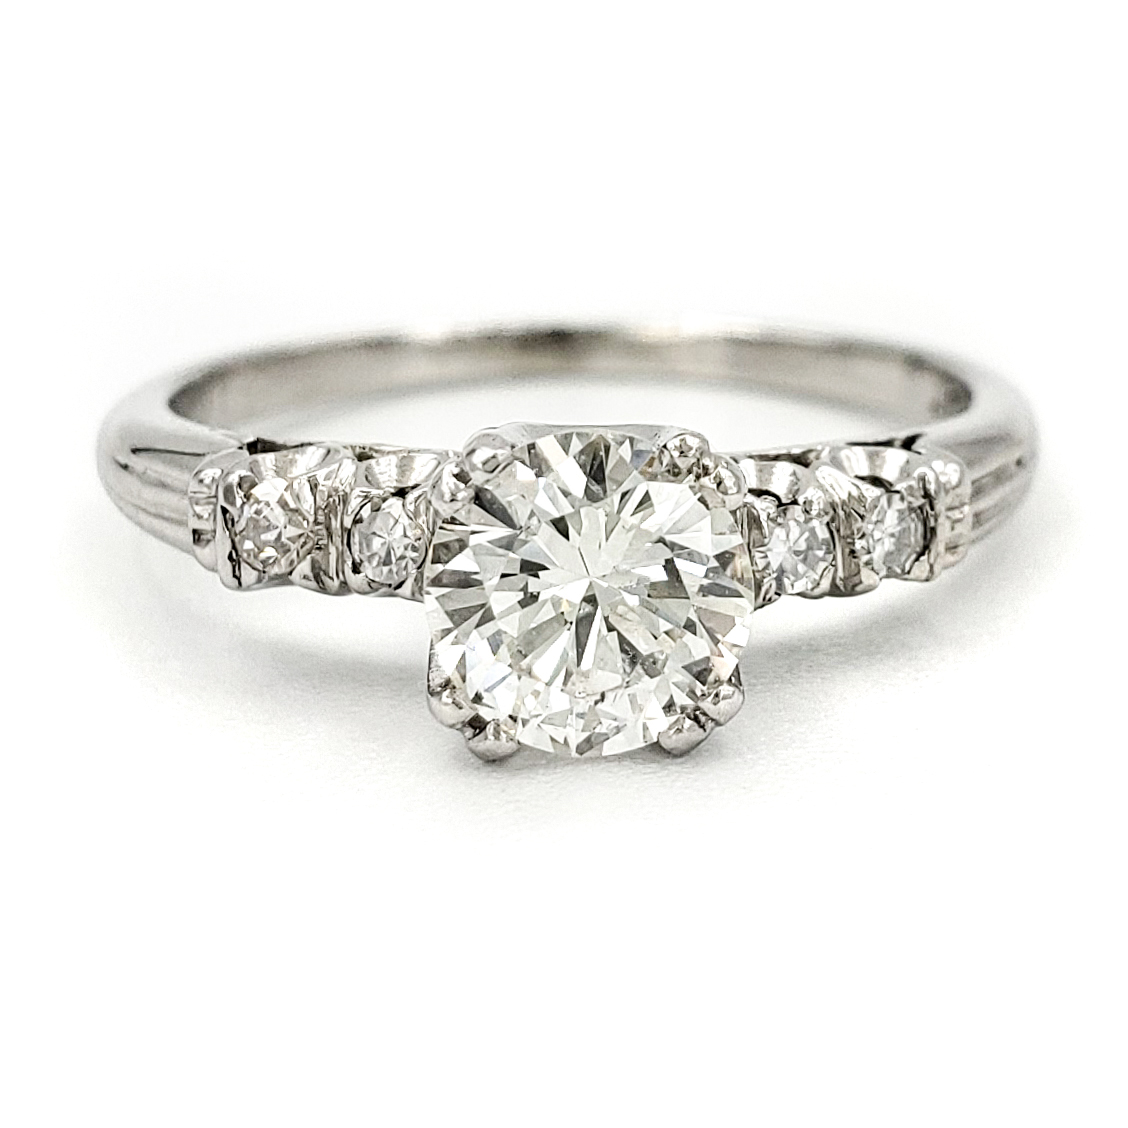 vintage-platinum-engagement-ring-with-0-61-carat-round-brilliant-cut-diamond-egl-h-si1